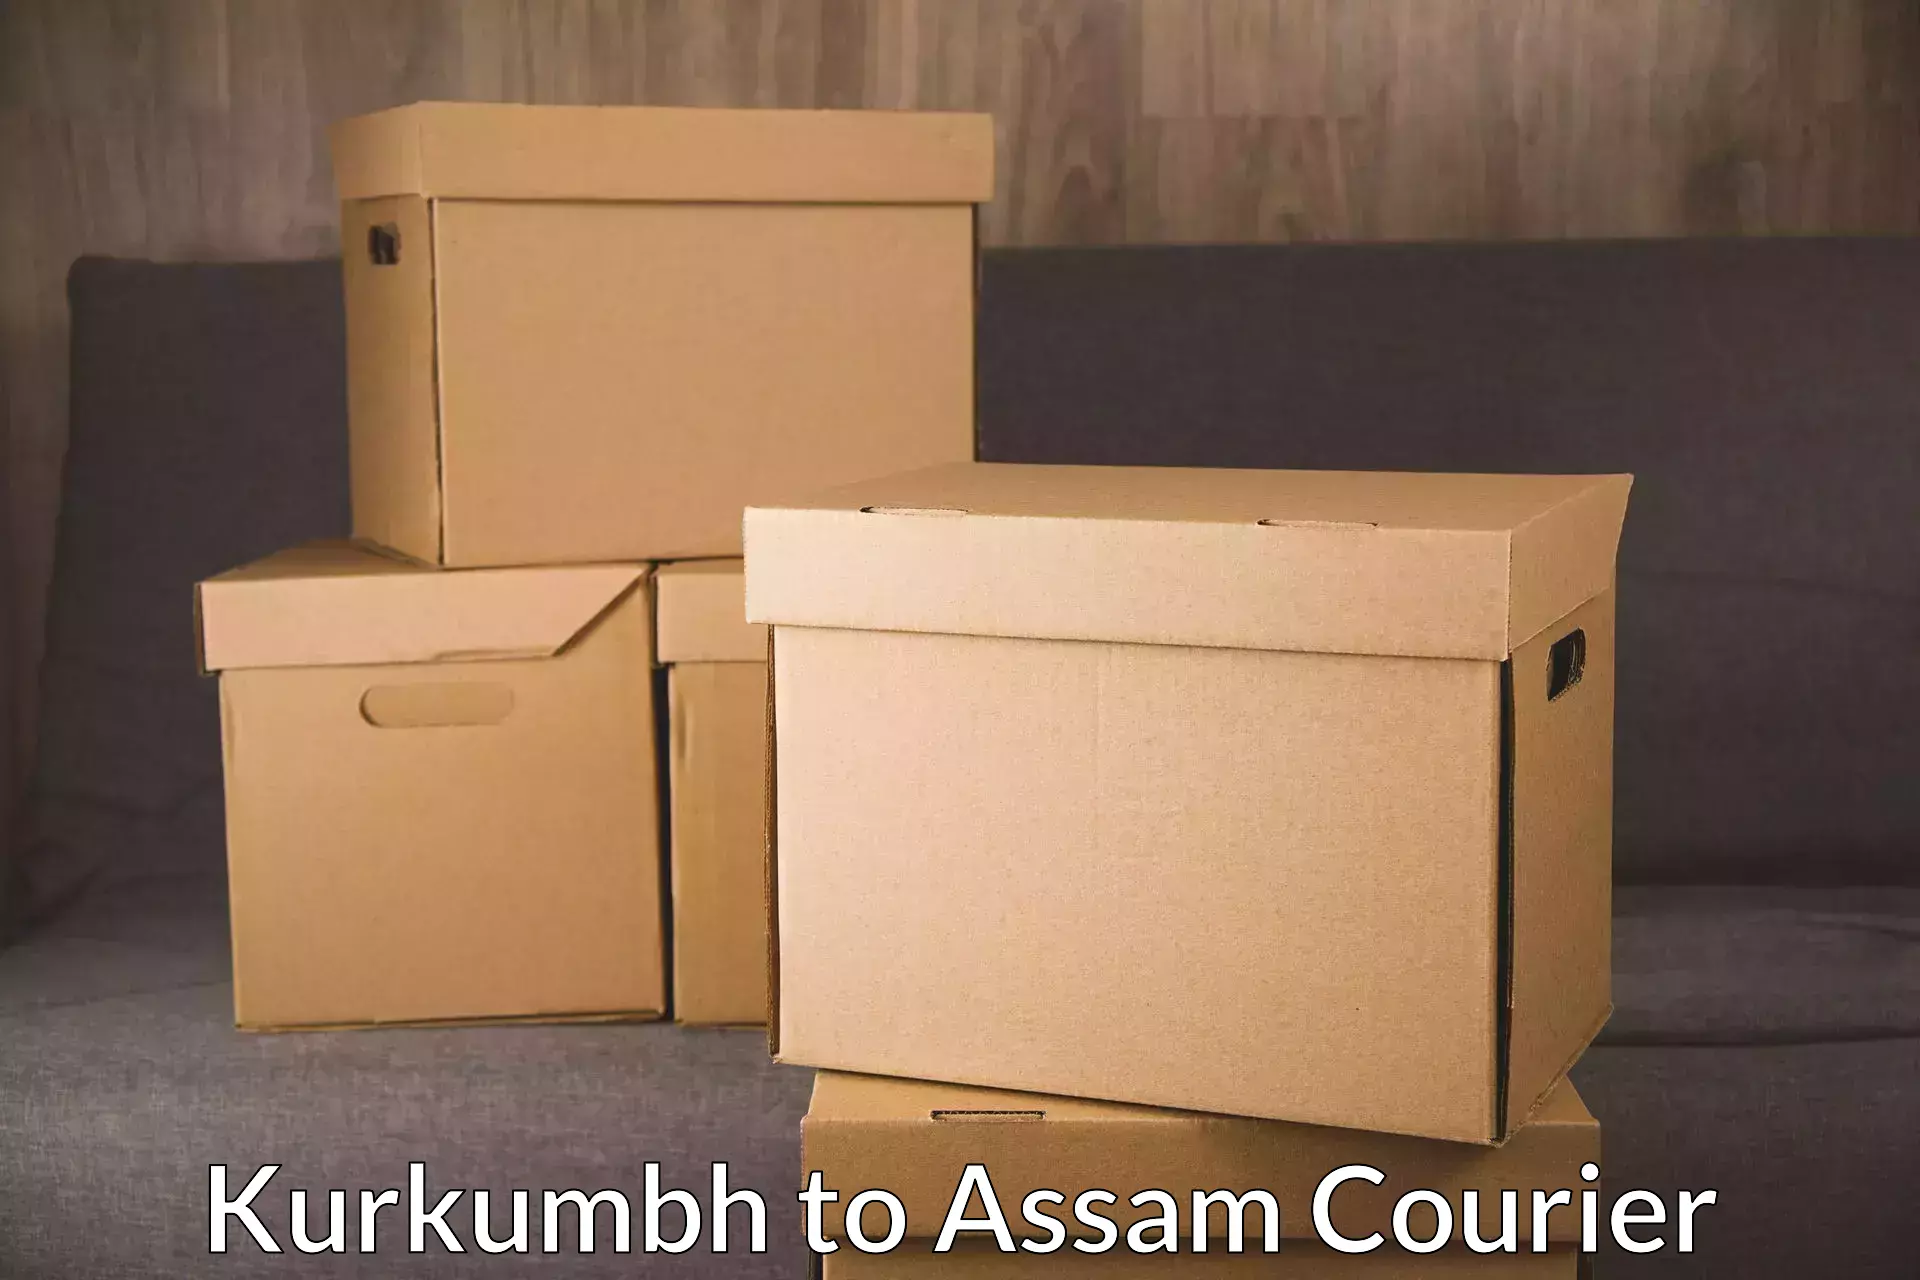 Reliable package handling Kurkumbh to Dhubri